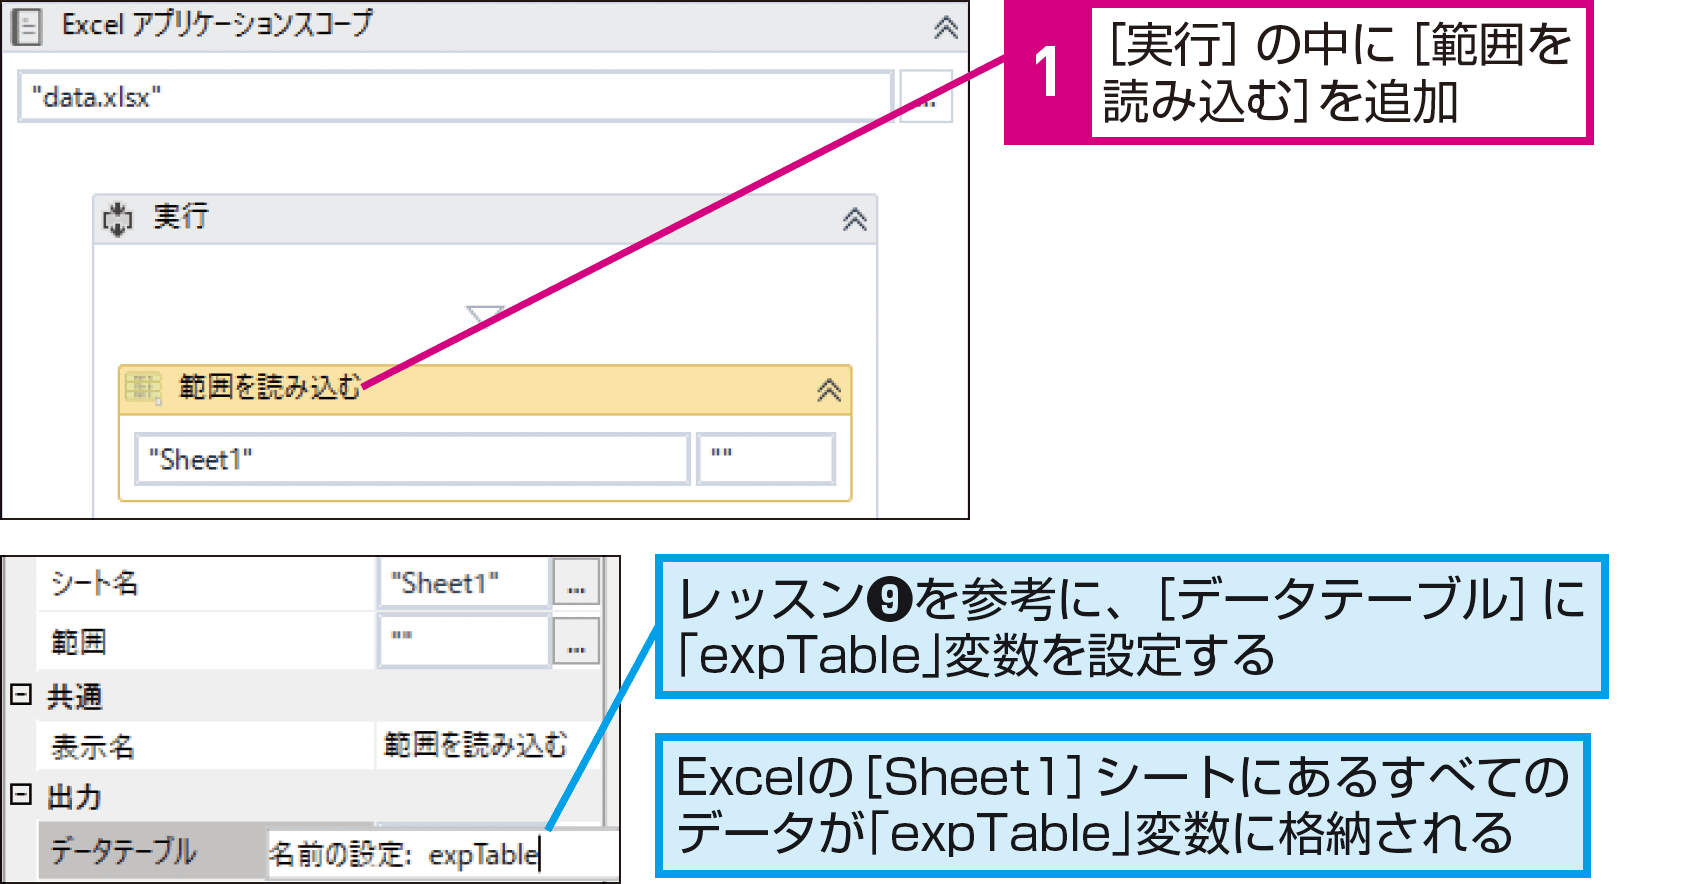 ExcelのデータをWebアプリに入力するには（Excelデータからの入力） - できるUiPath